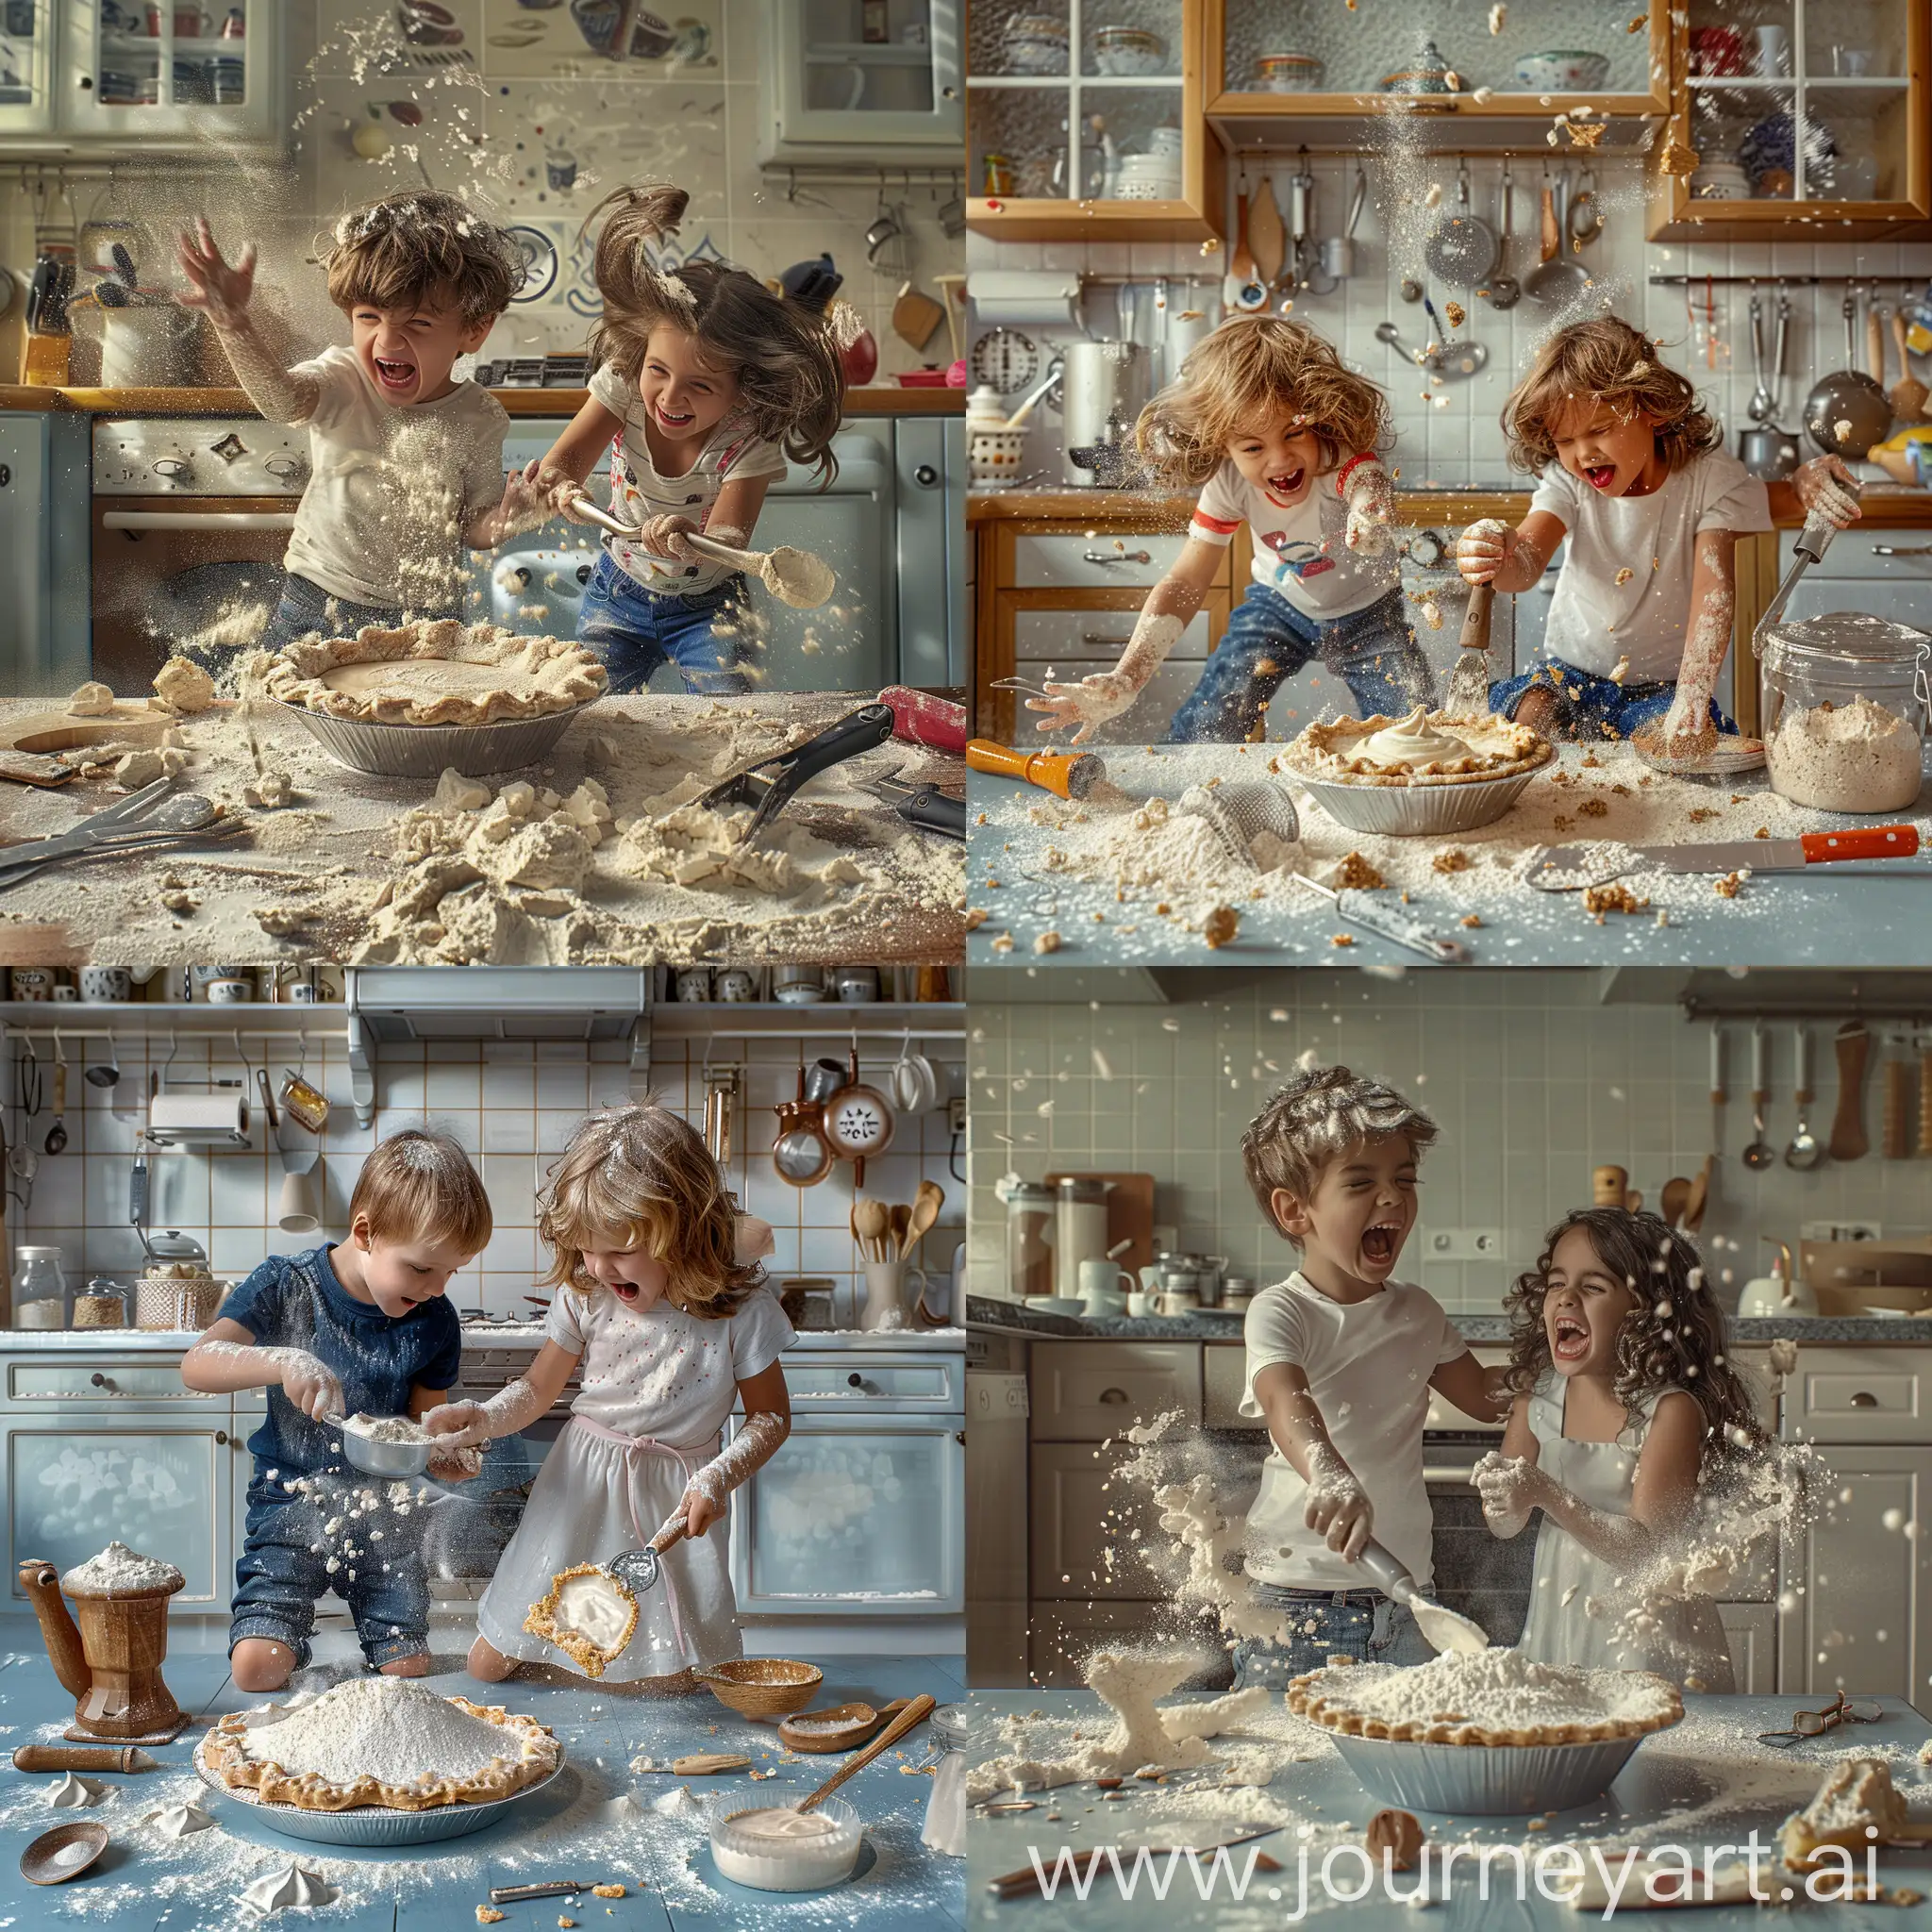 Joyful-Kitchen-Chaos-Childrens-PieMaking-Adventure